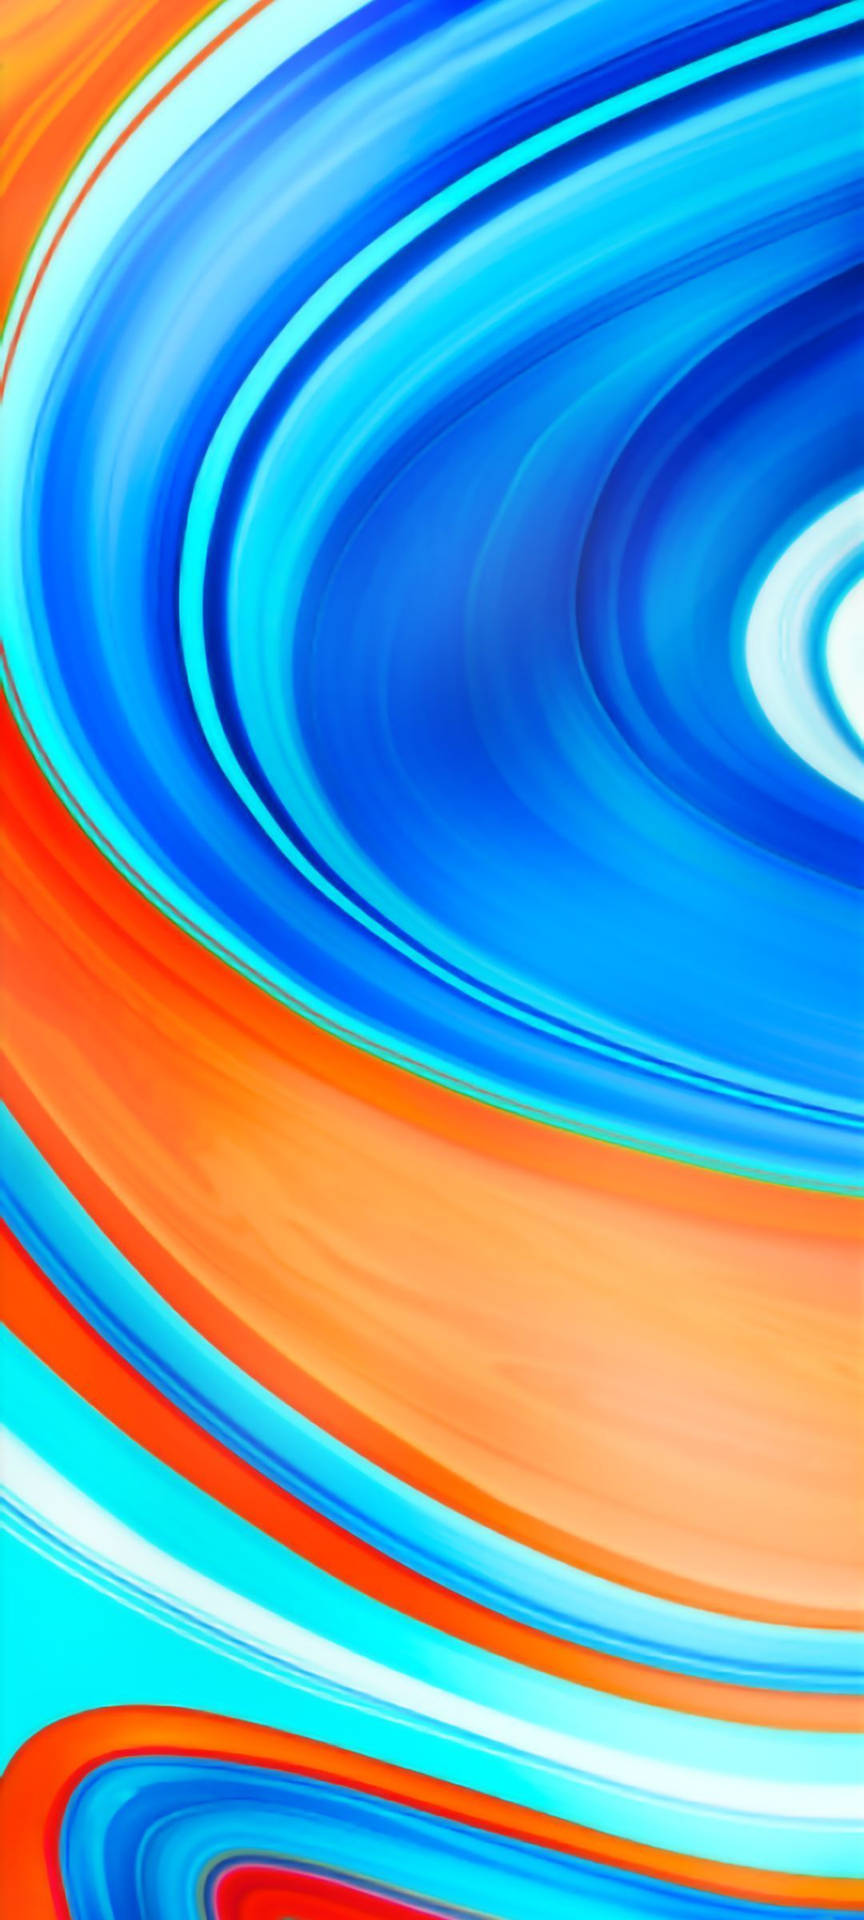 Caption: Stunning Display Of Redmi 9 In Blue & Orange Swirl Design